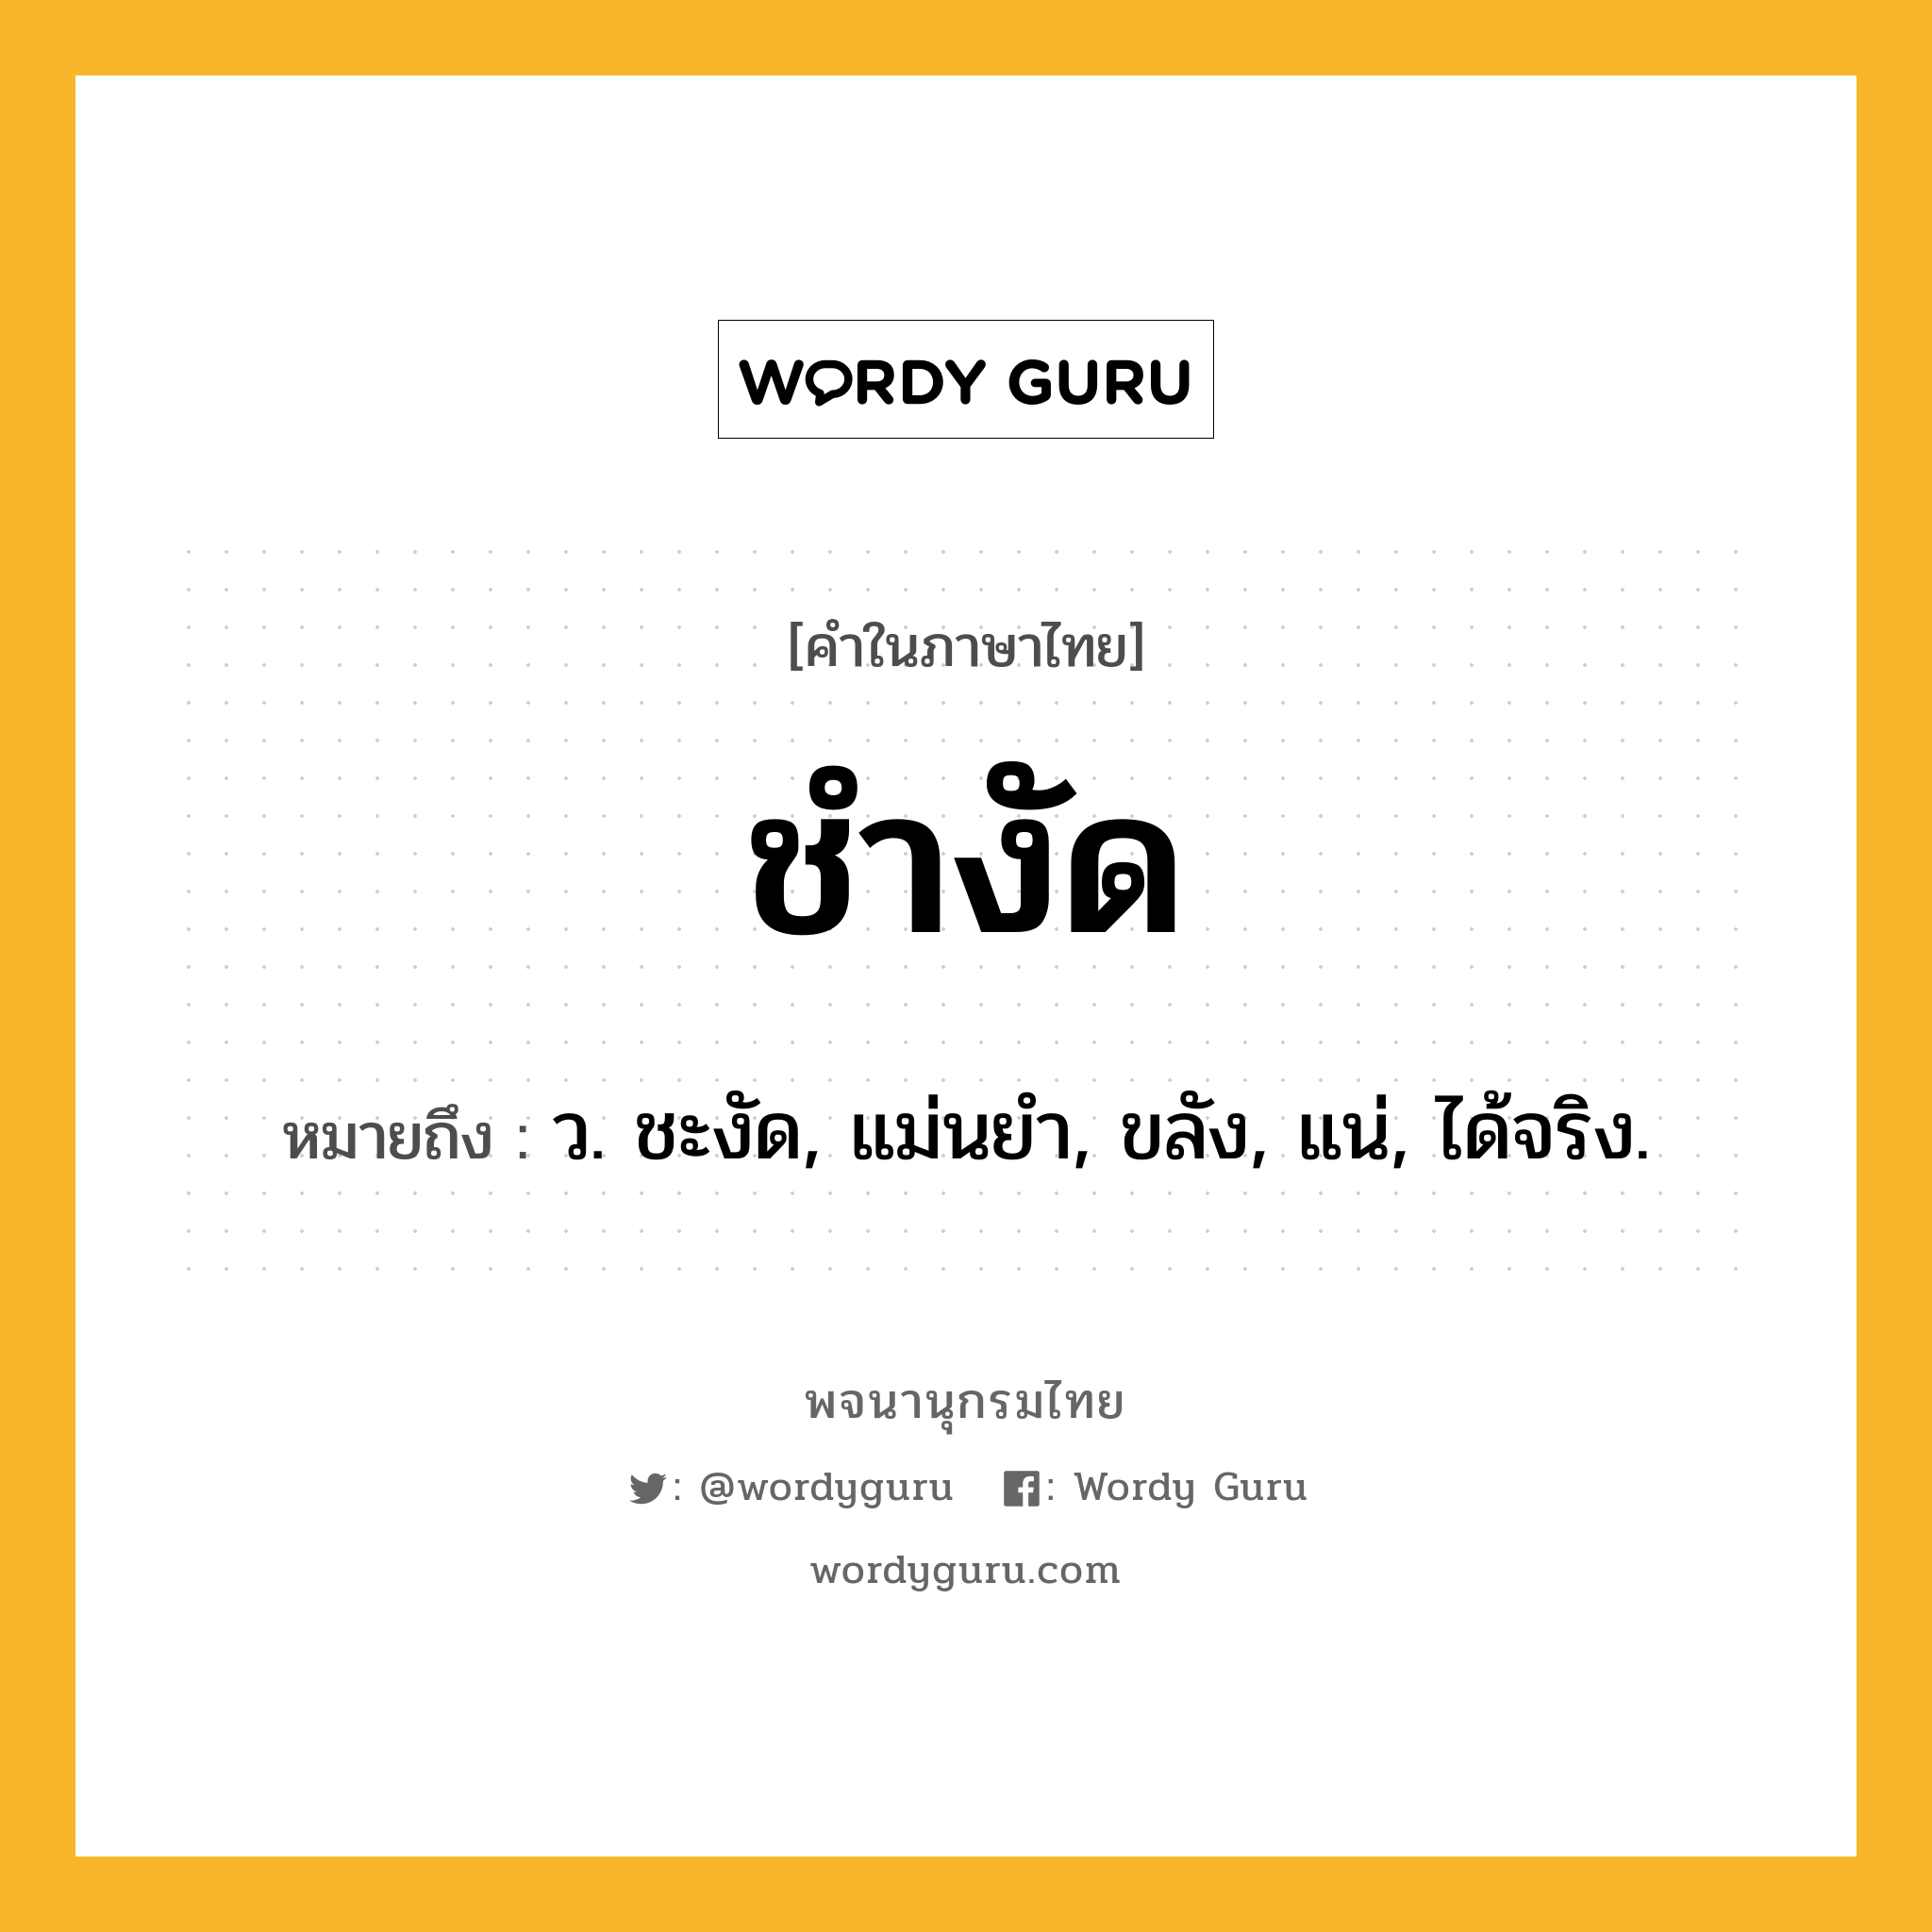 ชำงัด ความหมาย หมายถึงอะไร?, คำในภาษาไทย ชำงัด หมายถึง ว. ชะงัด, แม่นยํา, ขลัง, แน่, ได้จริง.